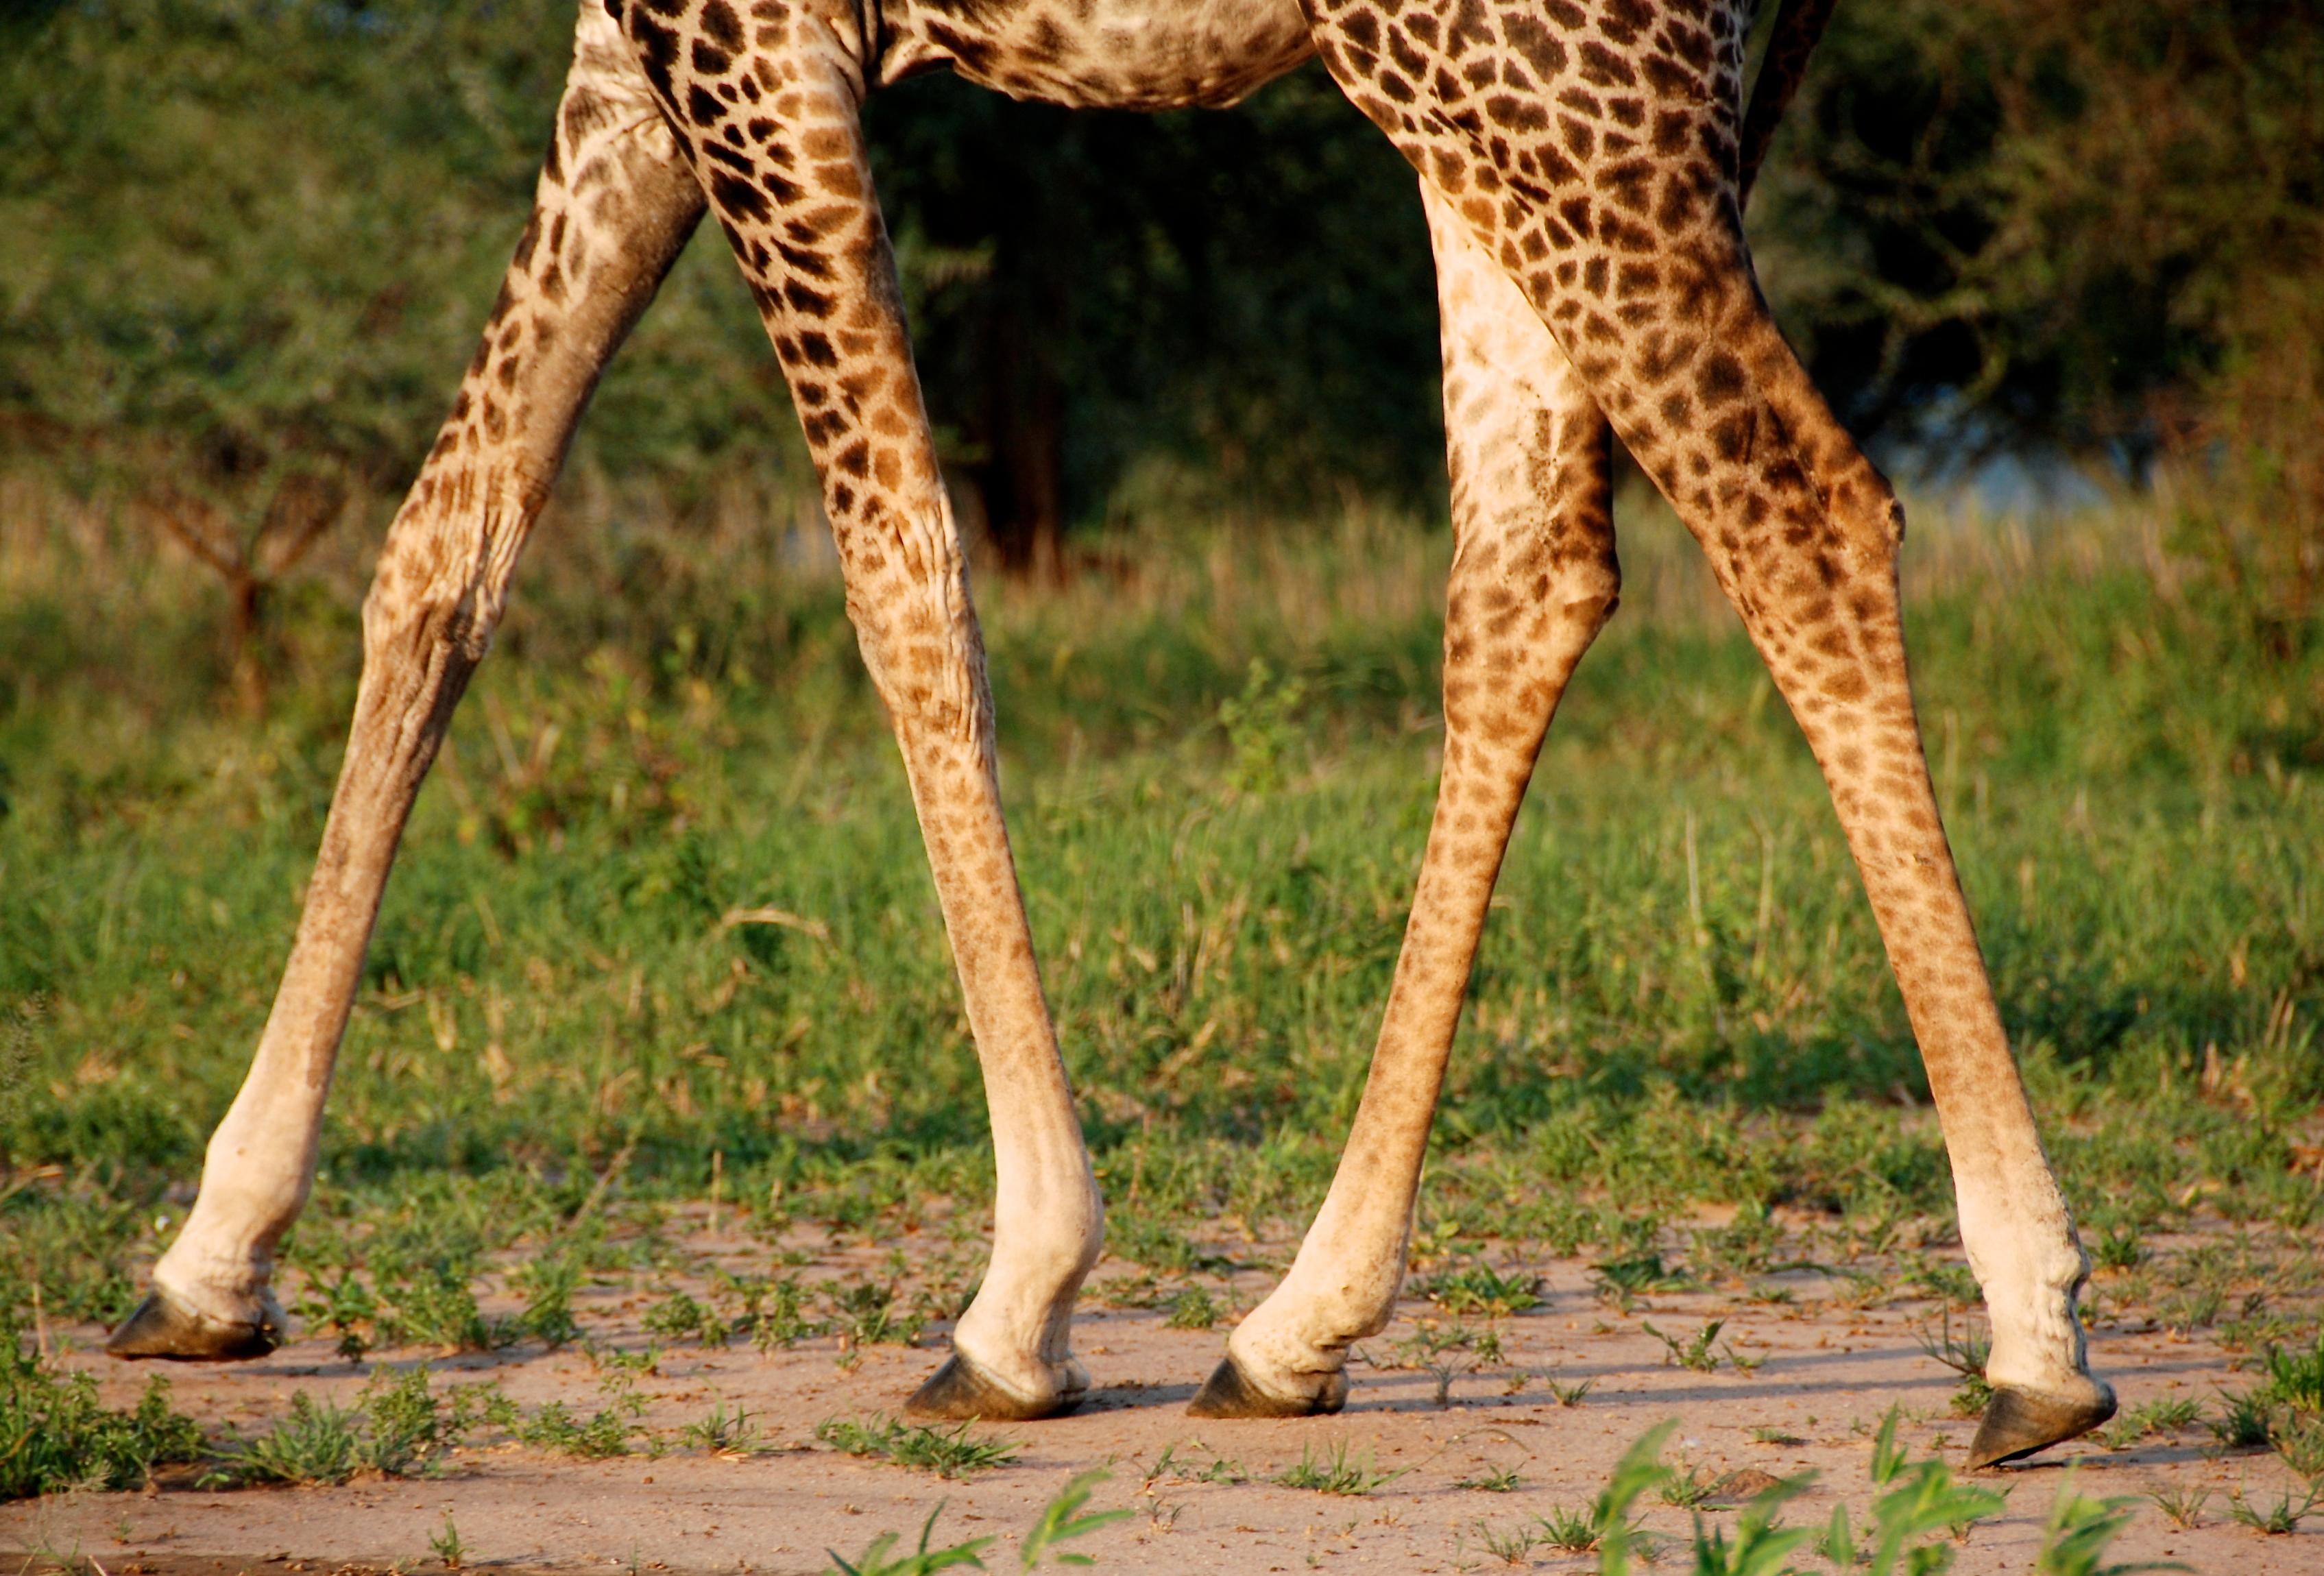 9. Kronik bacak ülseri rahatsızlıklarına hızır gibi yetişen bandajlar için zürafalara büyük bir teşekkür borçlu olduğumuzu biliyor muydunuz?